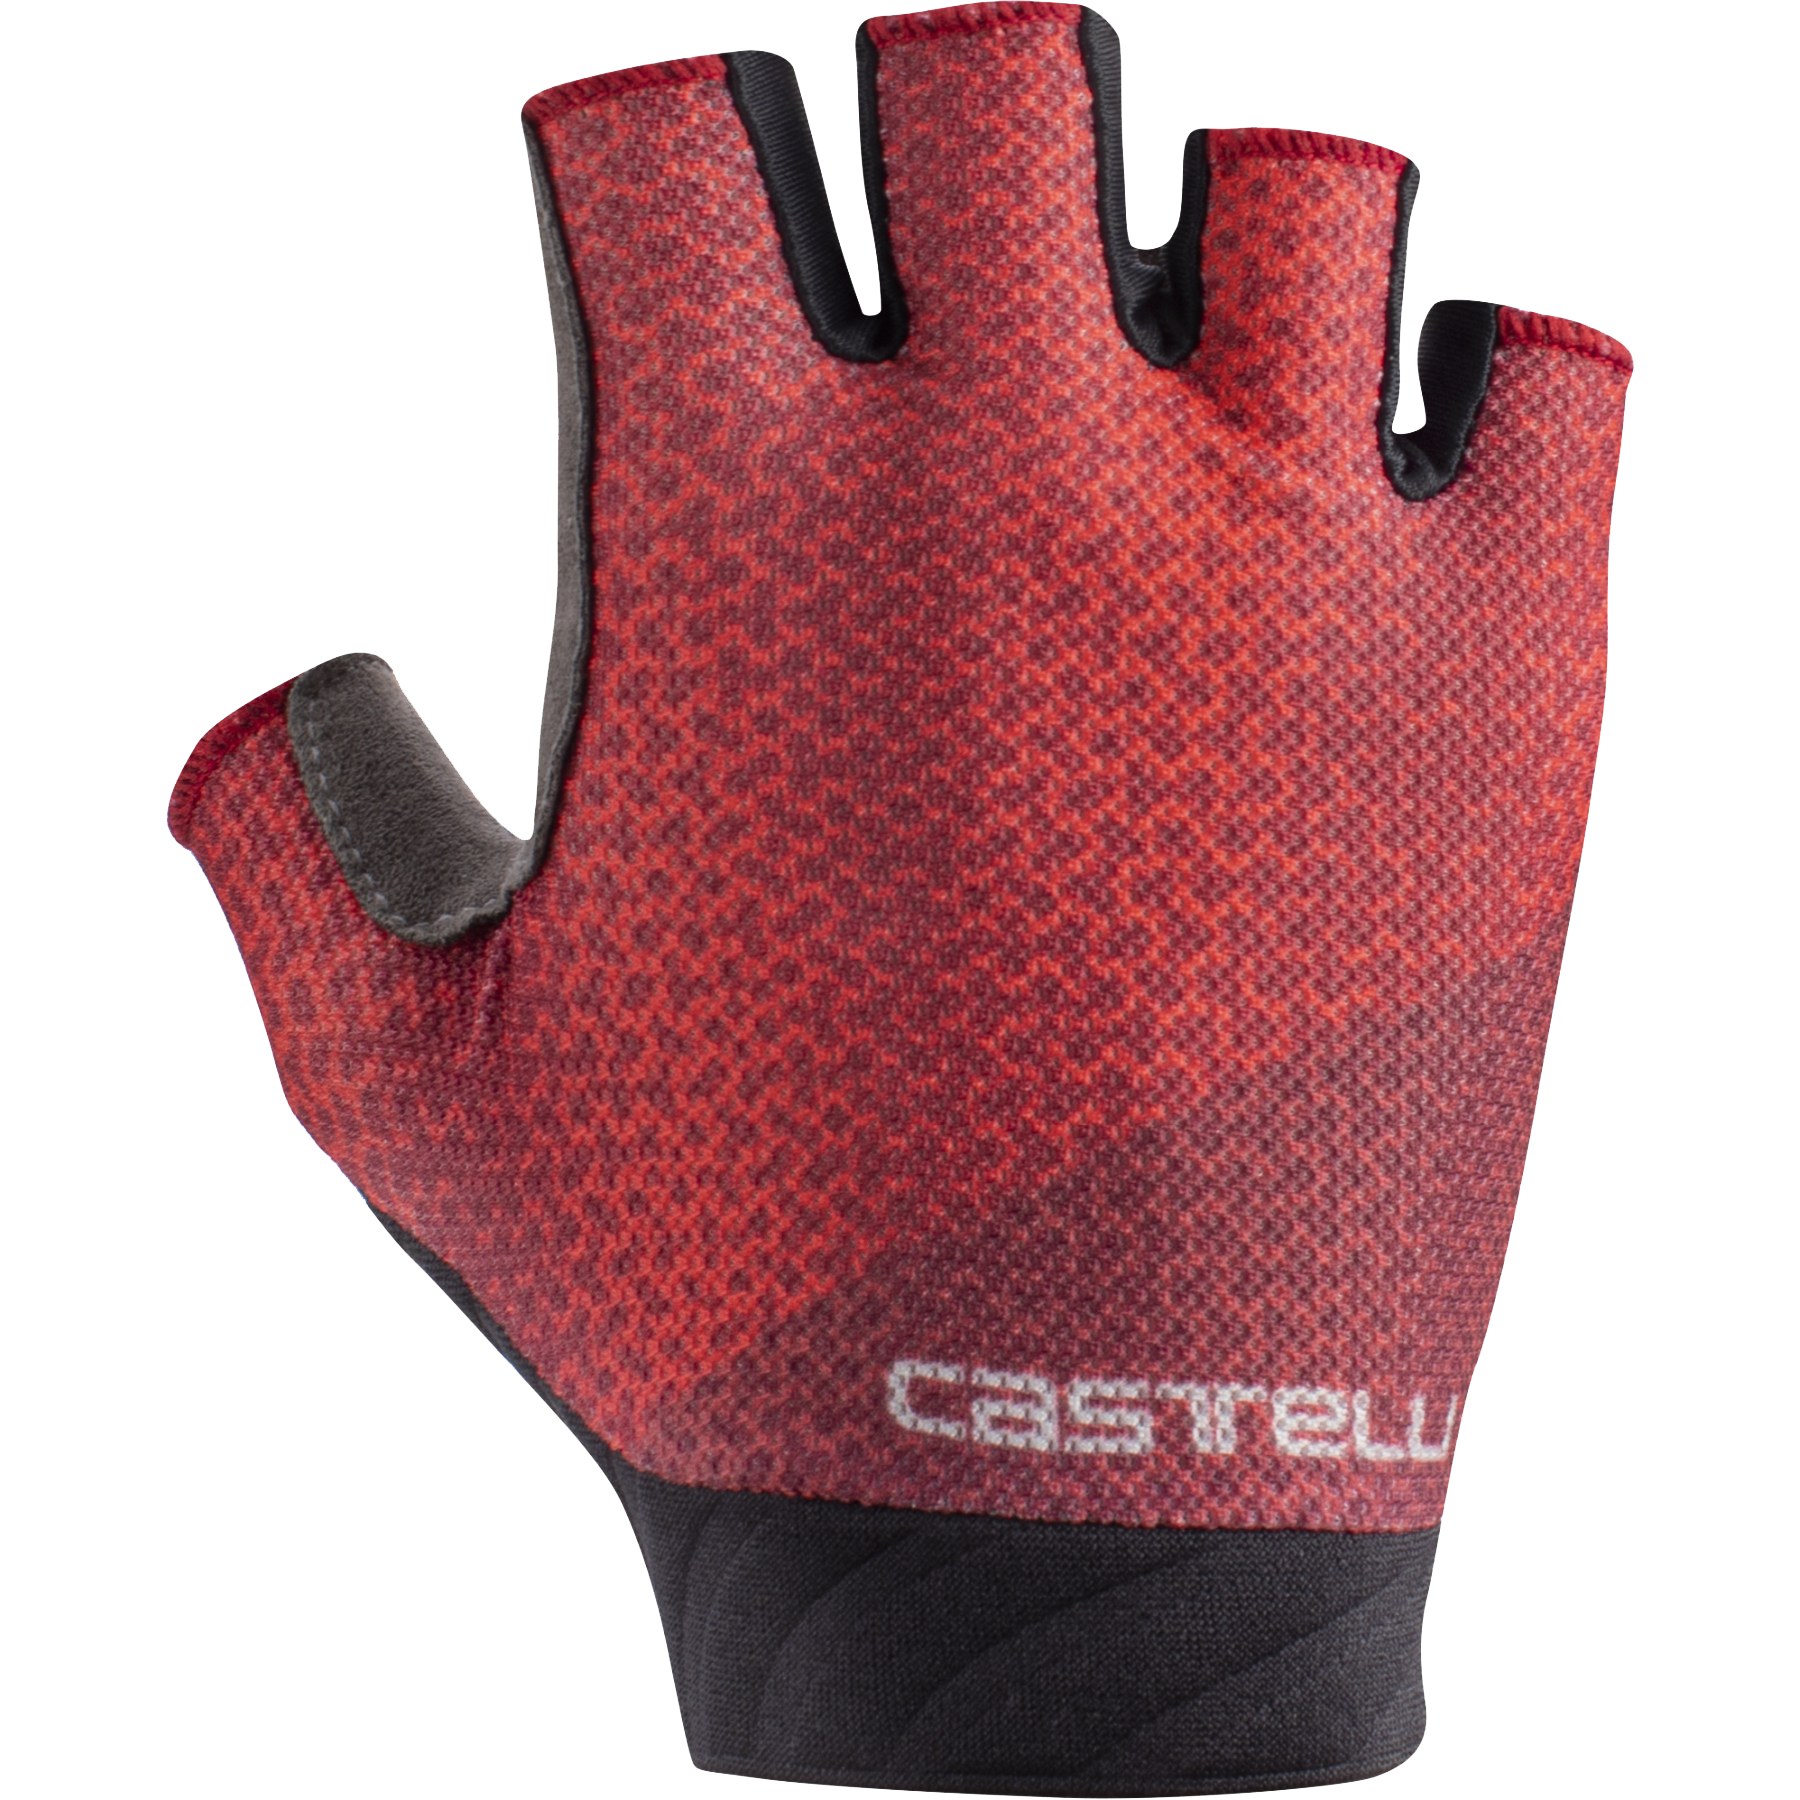 Produktbild von Castelli Roubaix Gel 2 Kurzfinger-Handschuhe Damen - hibiscus 081